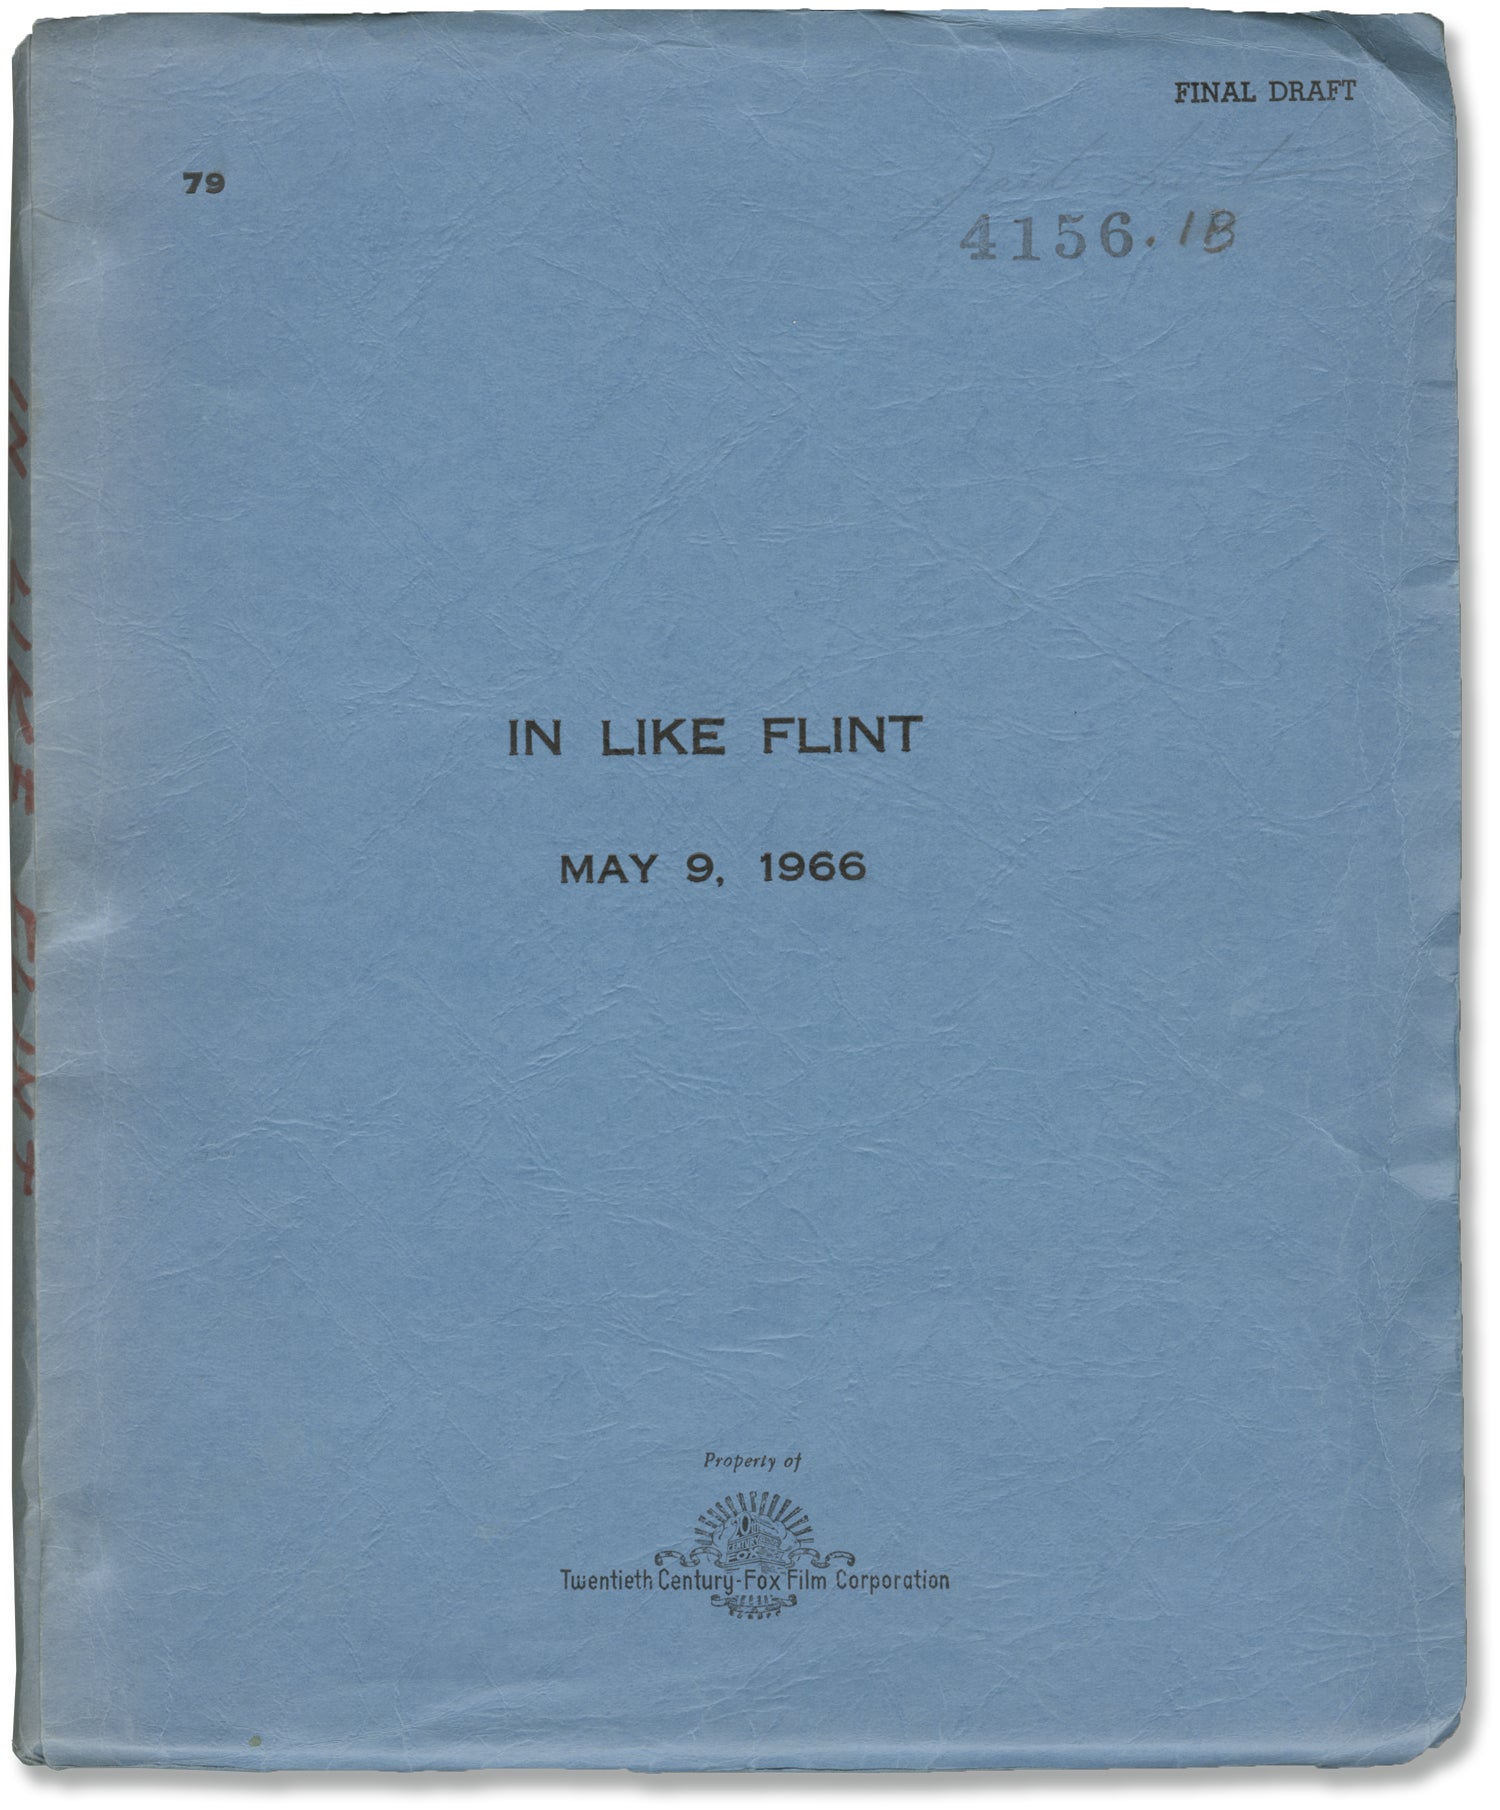 Flint [Book]